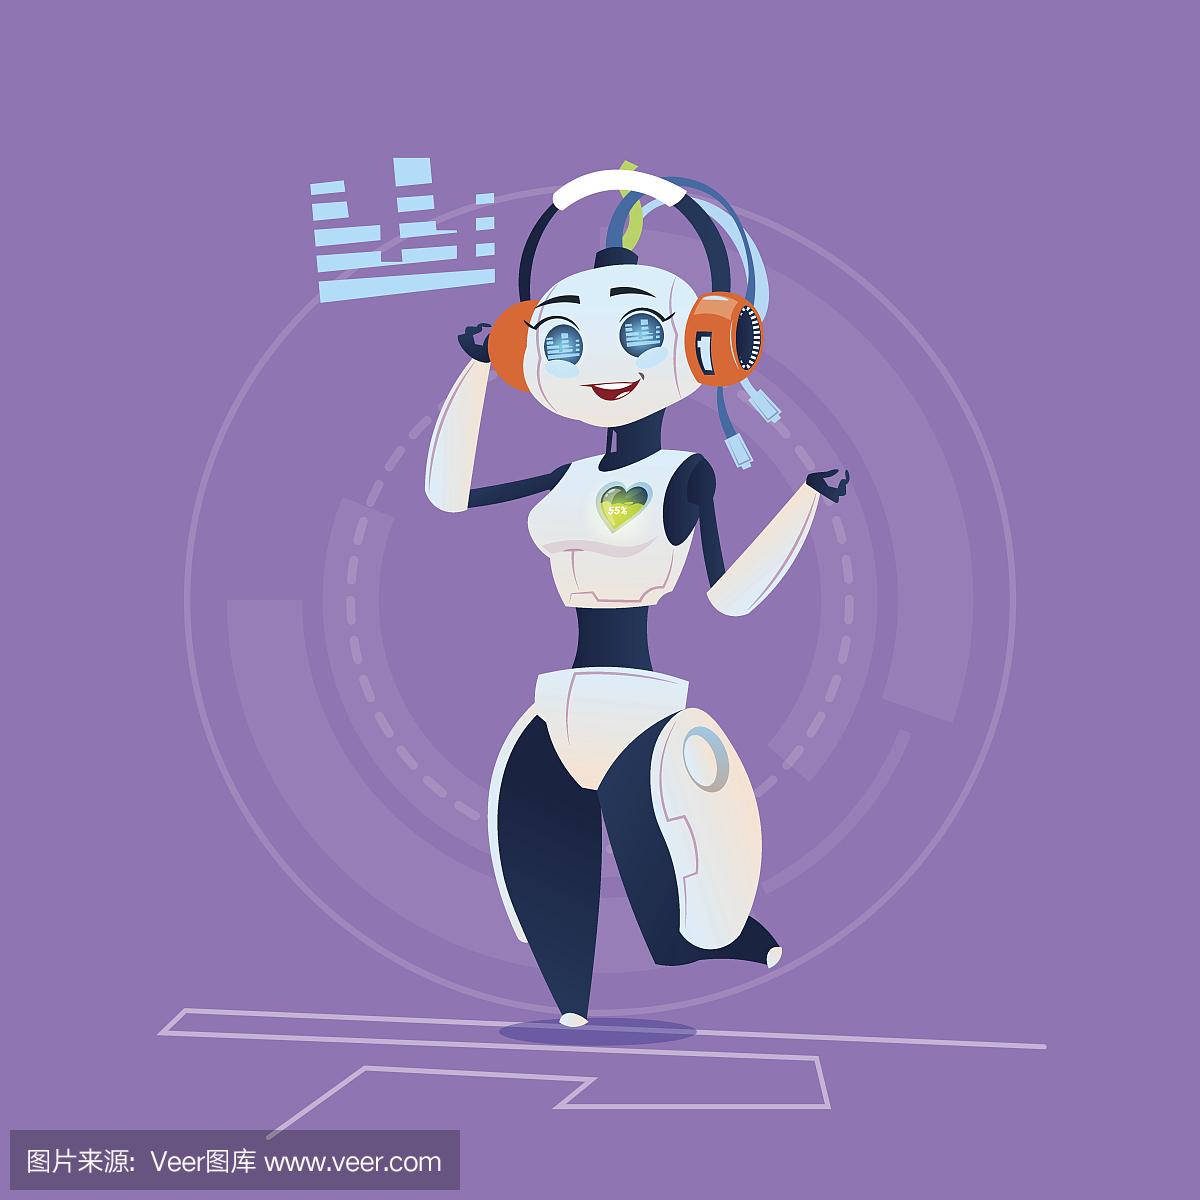 女性机器人通过耳机听音乐现代人工智能技术概